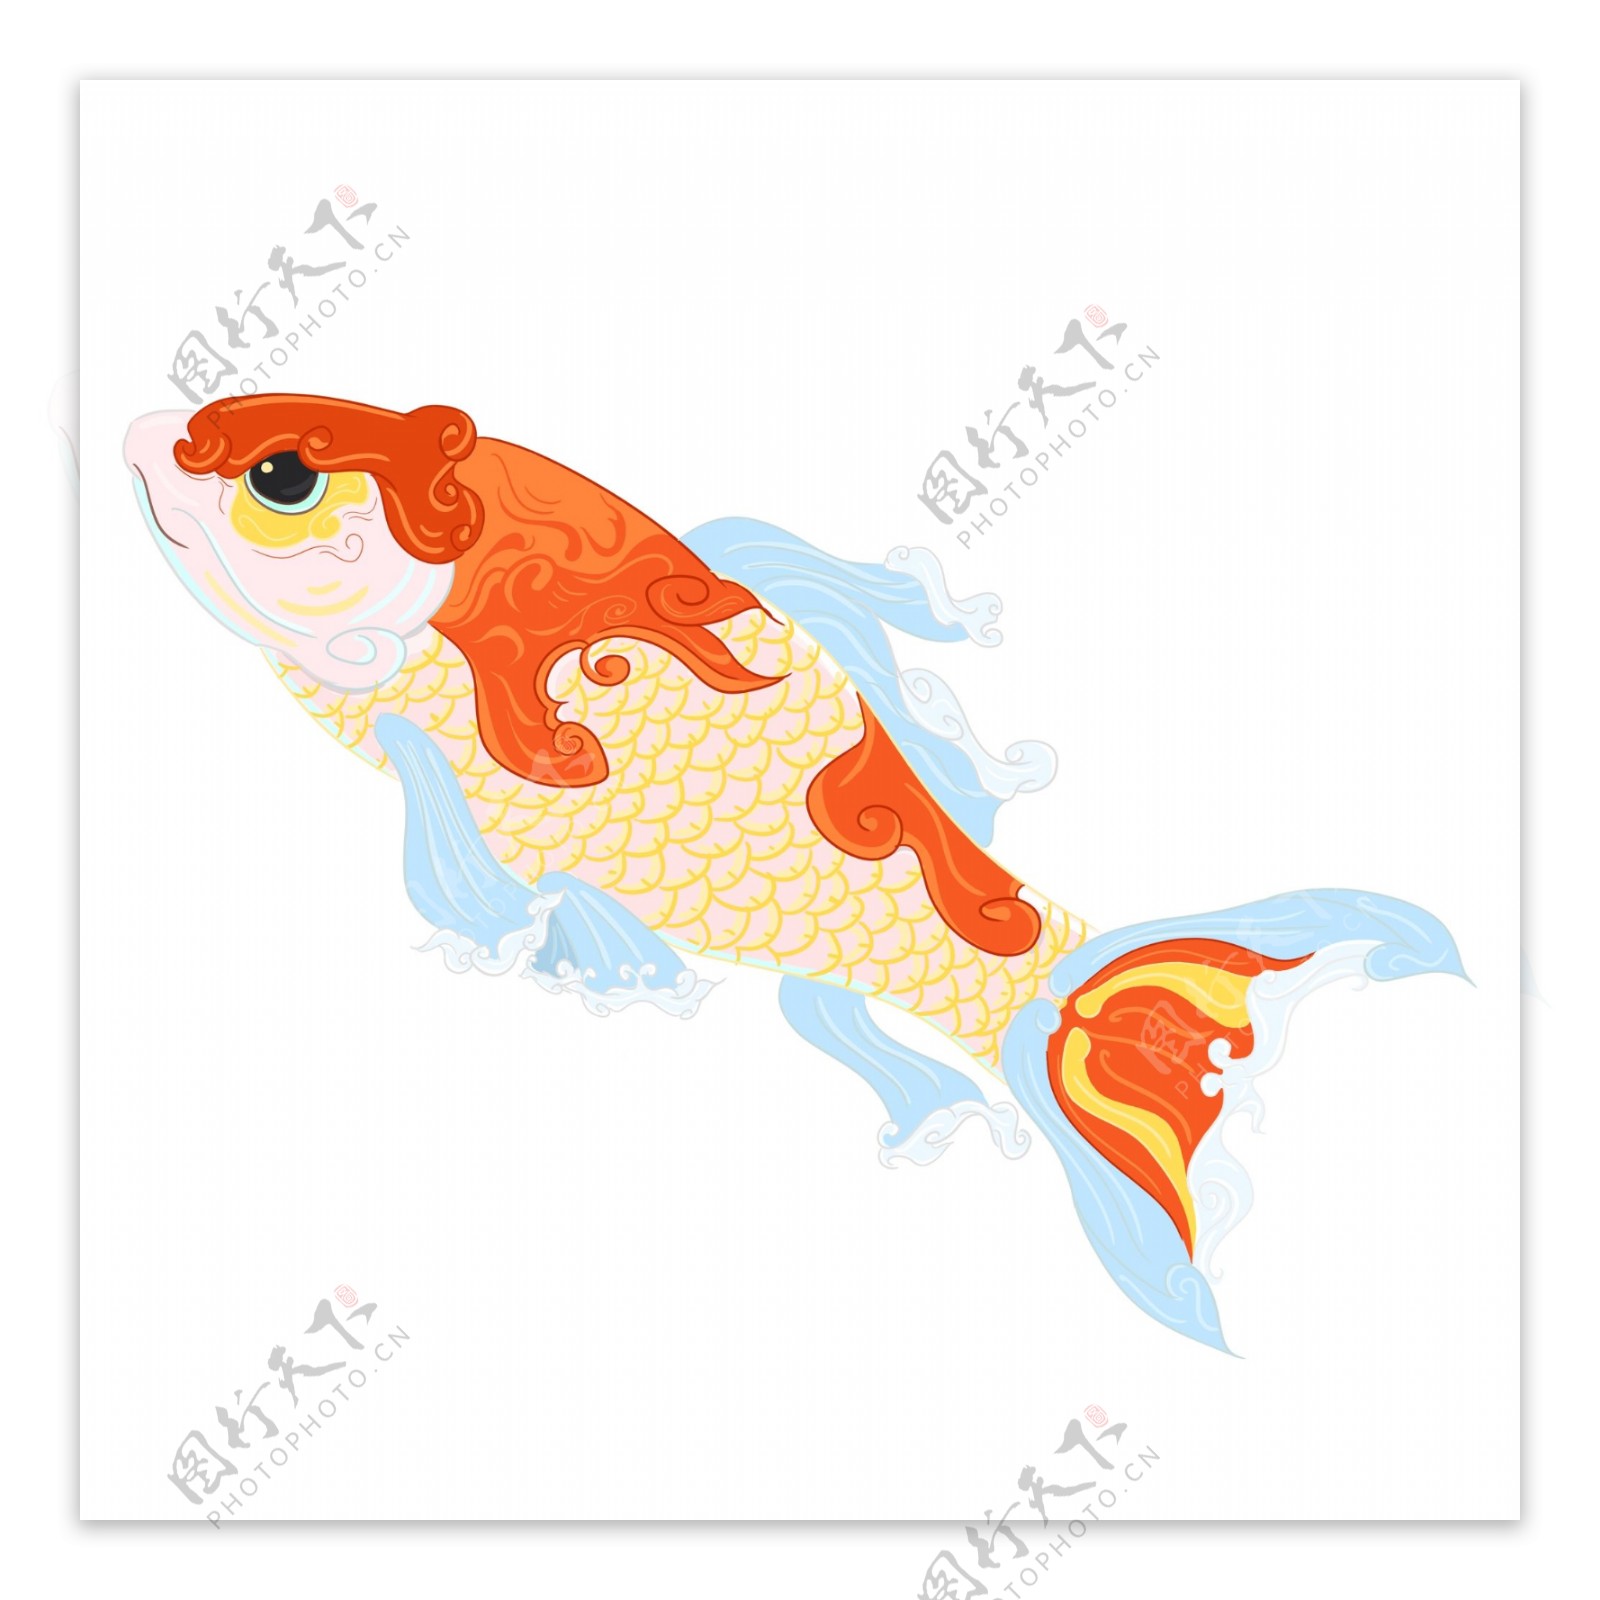 中国风手绘锦鲤鲤鱼设计元素